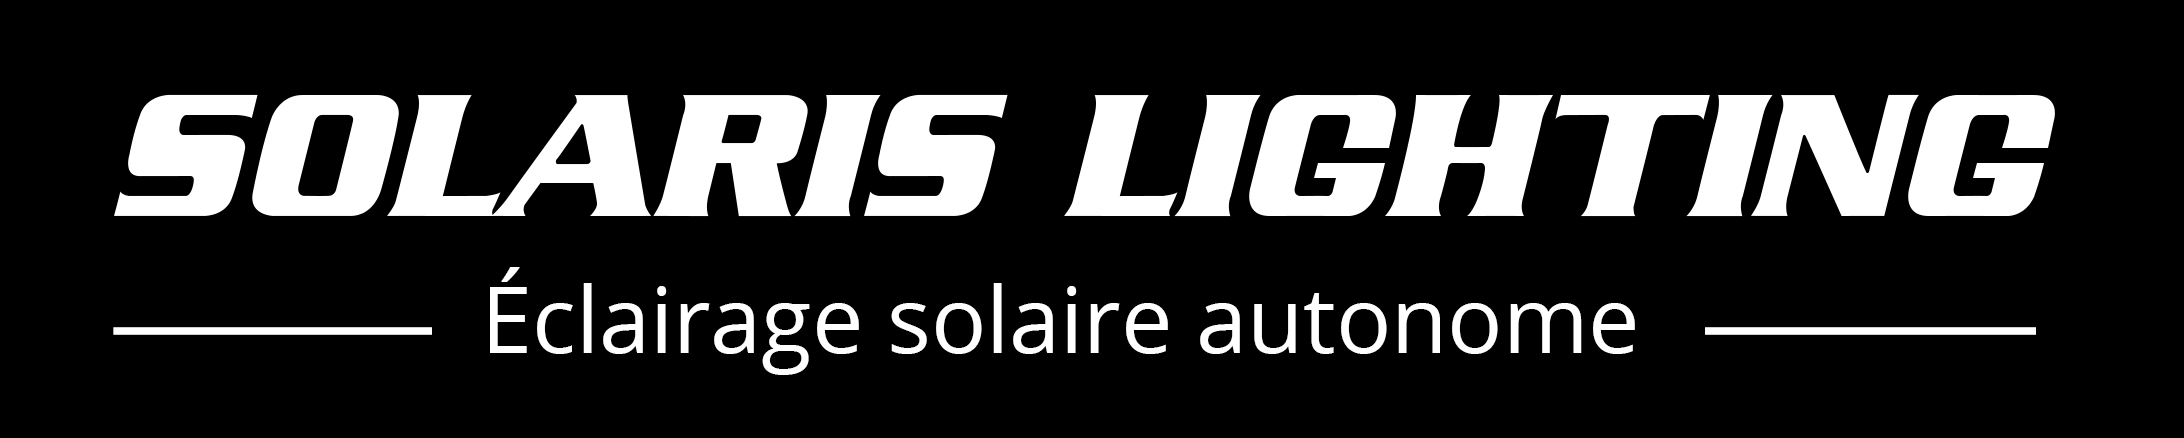 Solaris Ligthing / Mobilier urbain & éclairage solaire autonome